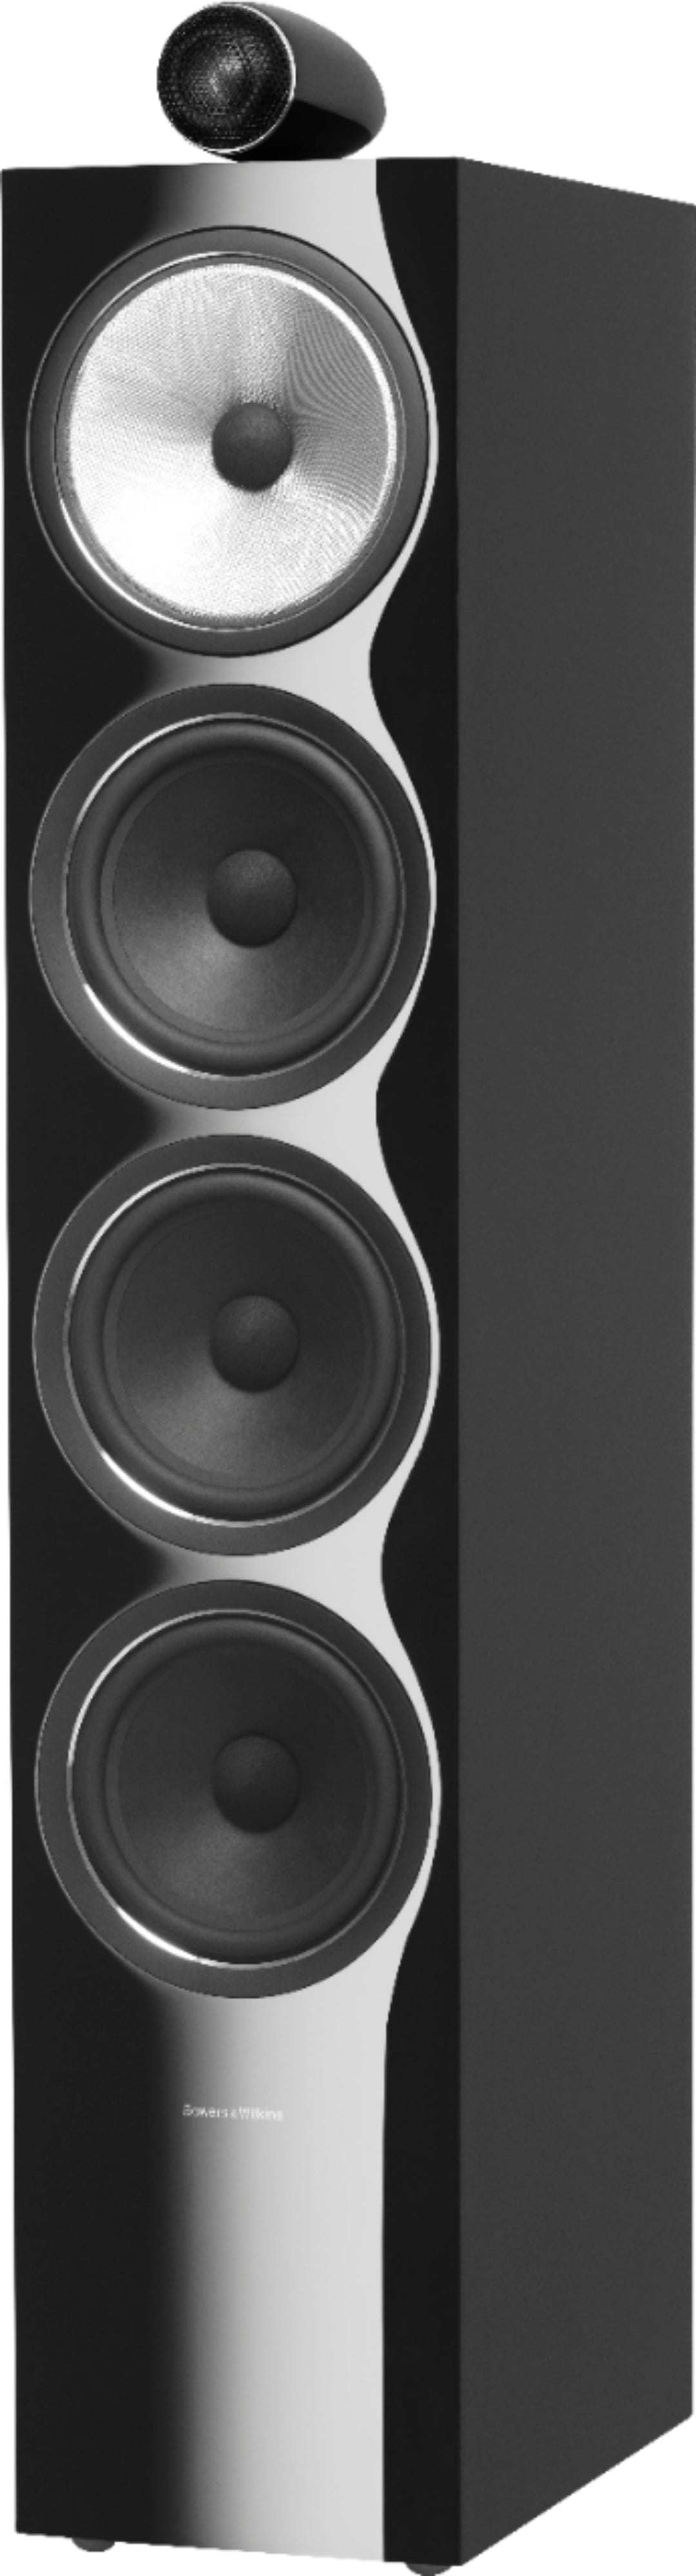 Bowers & Wilkins - 700 Series 3-way Floorstanding Speaker w/ Tweeter on top, w/6" midrange, three 6.5" bass drivers (each) - Gloss black_0